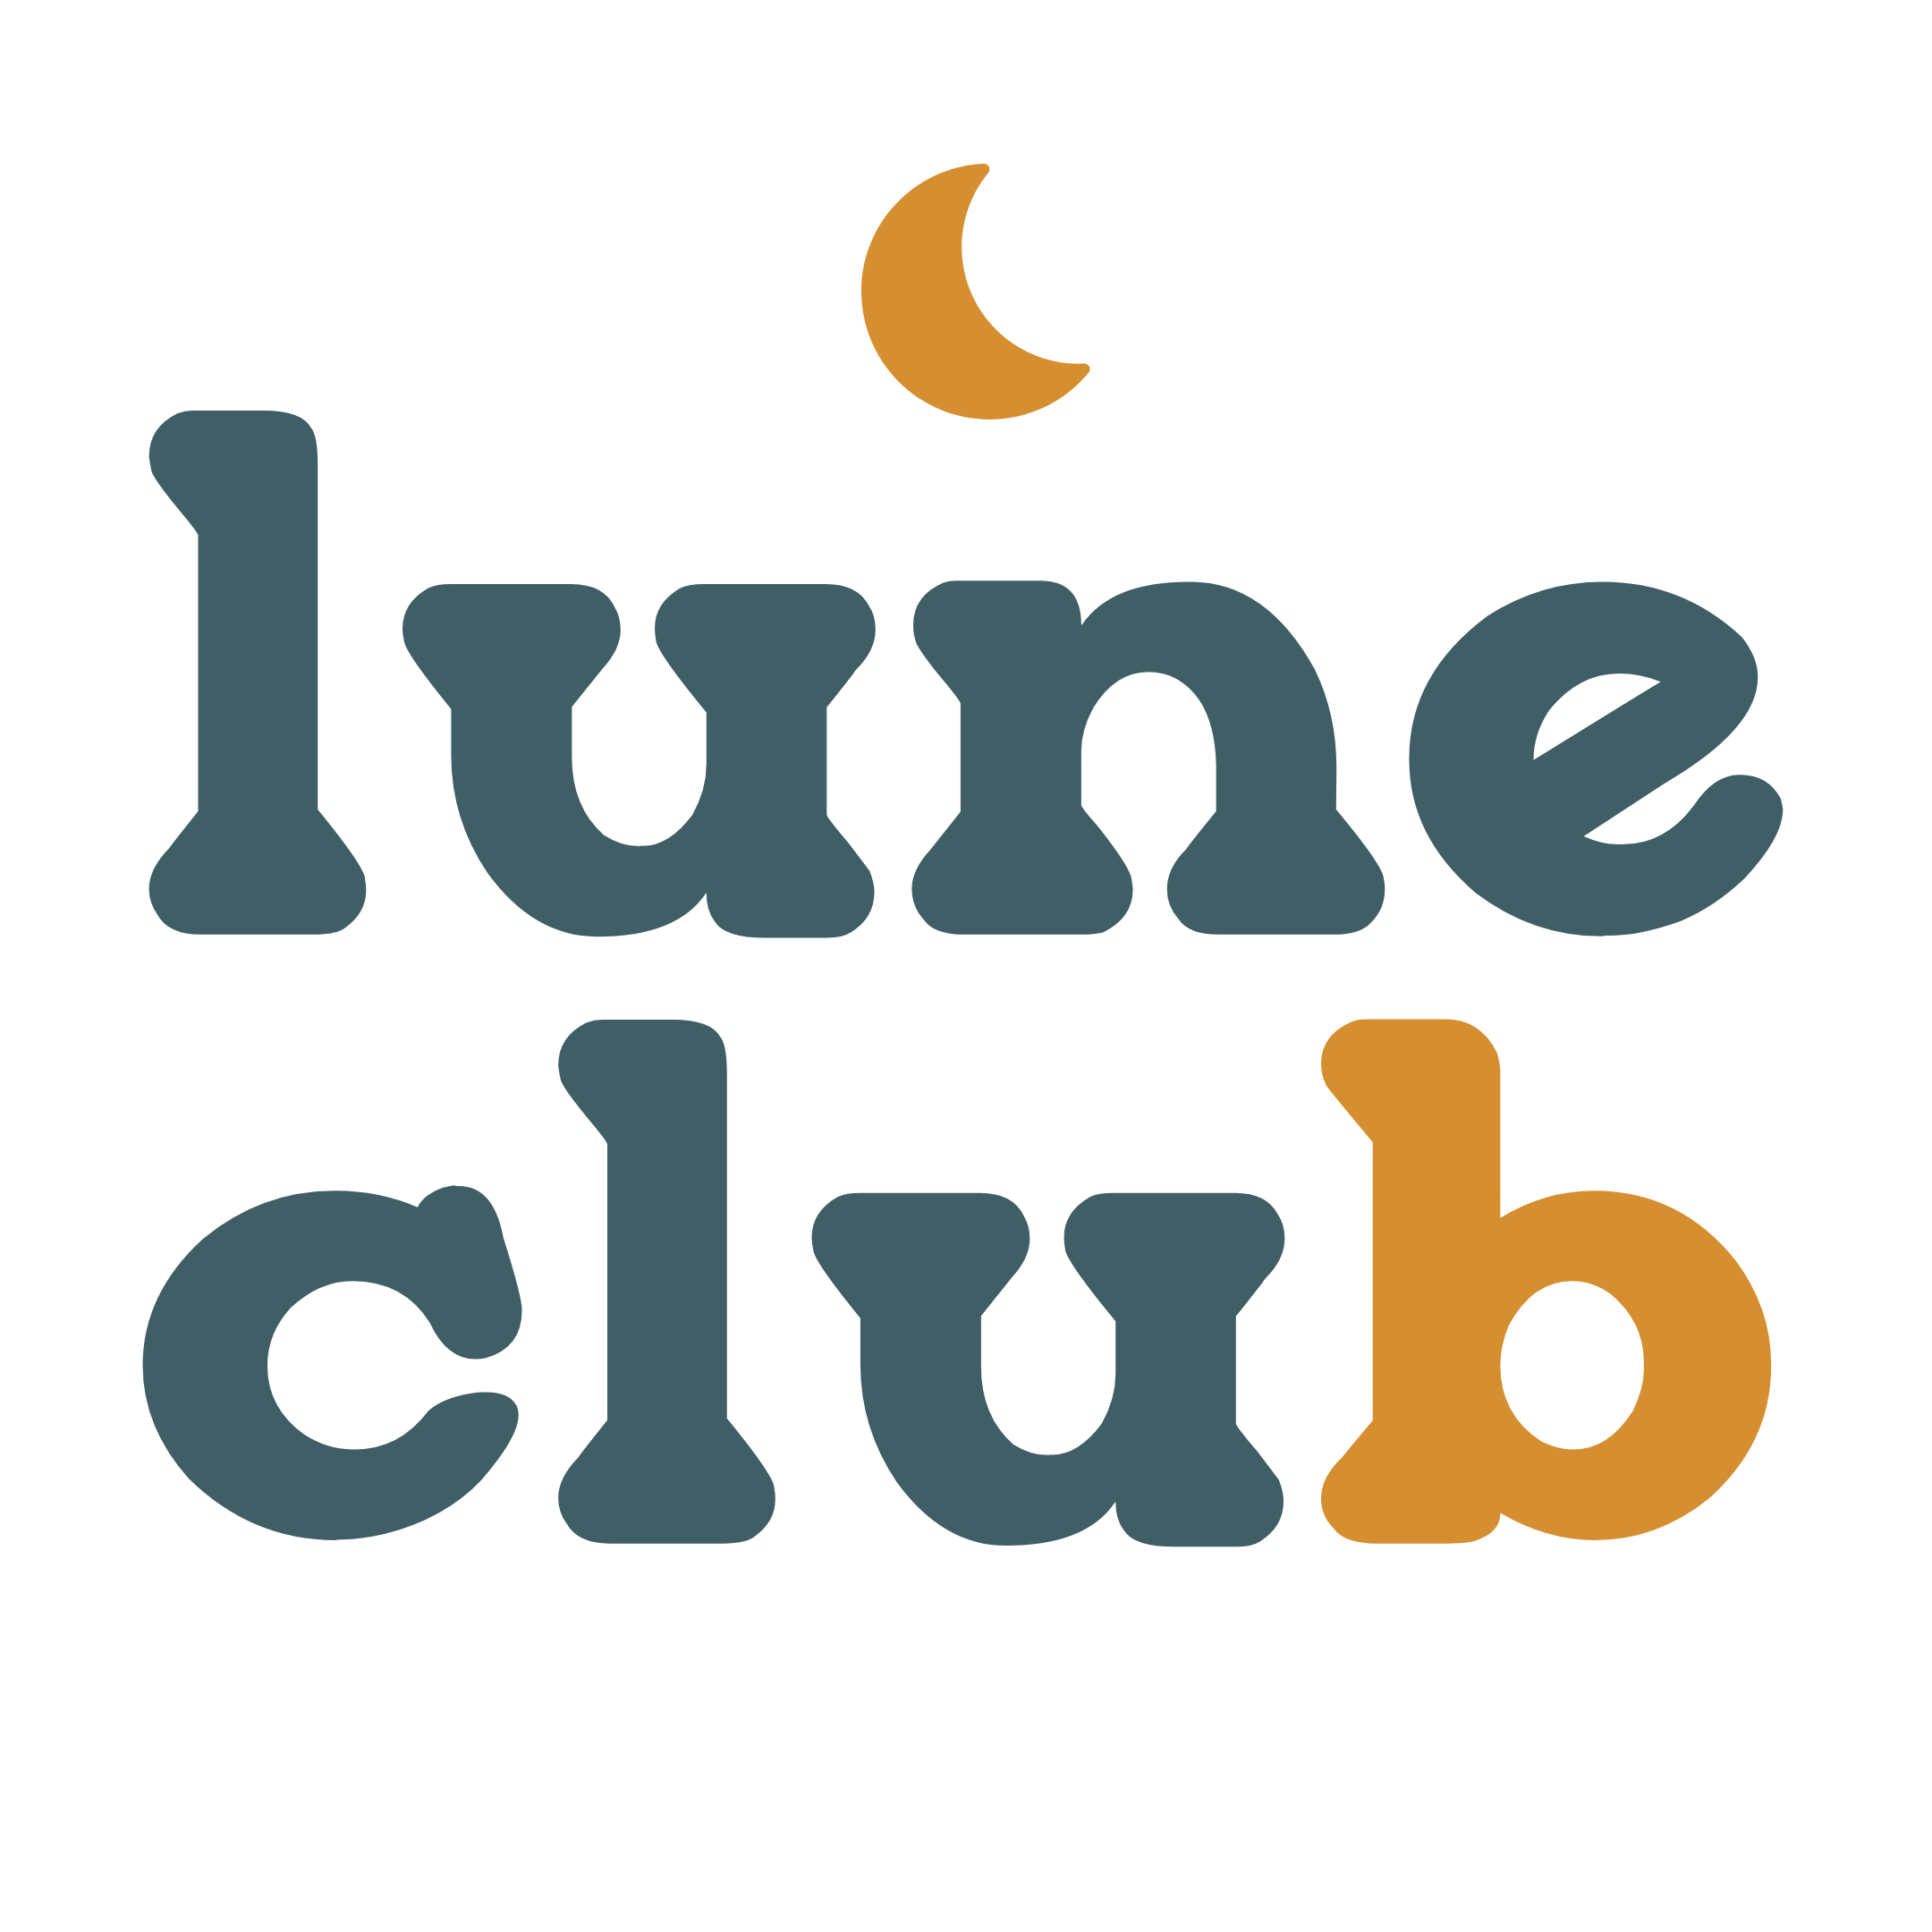 Lune Club